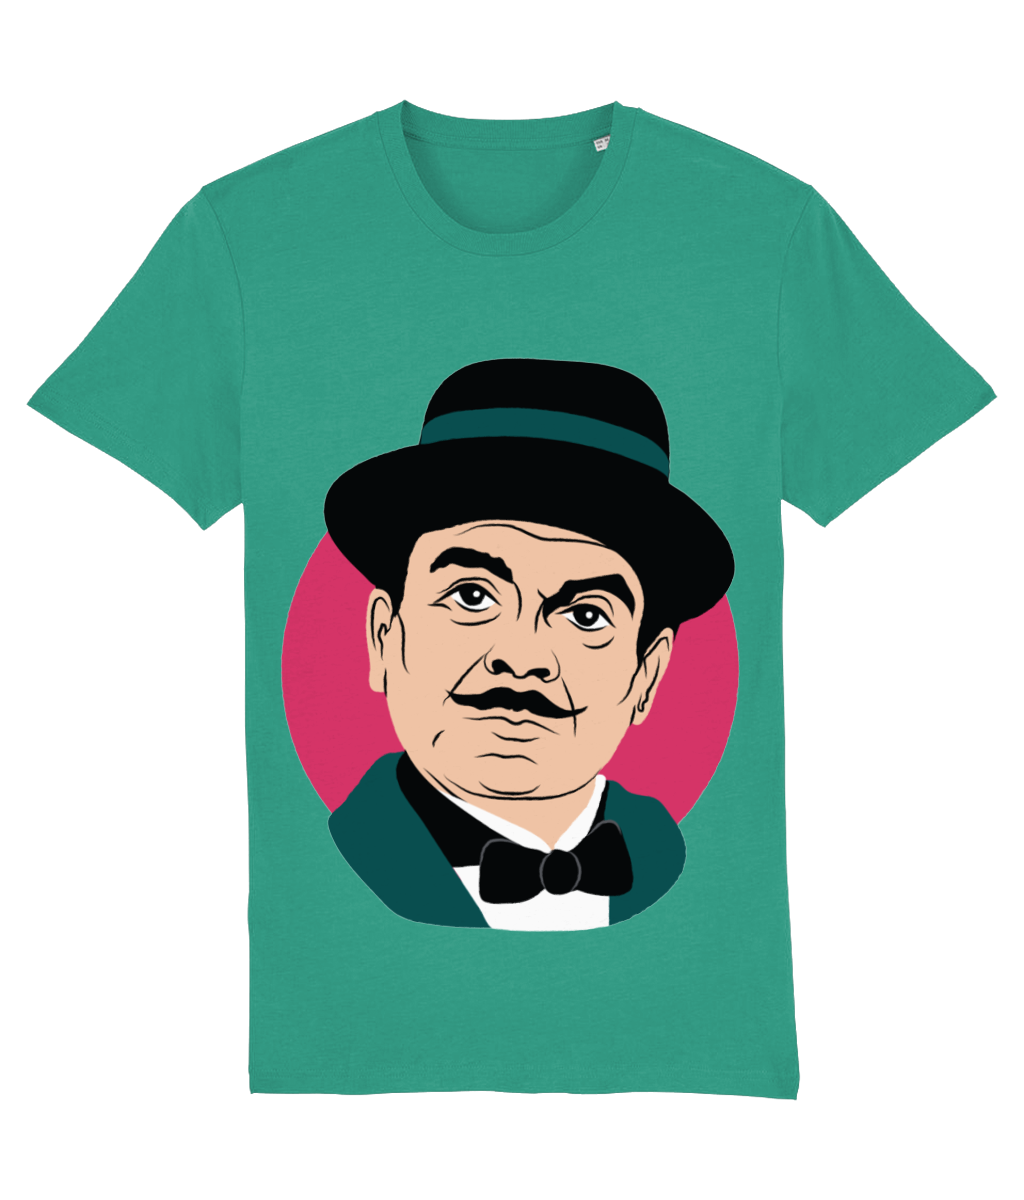 Poirot t shirt